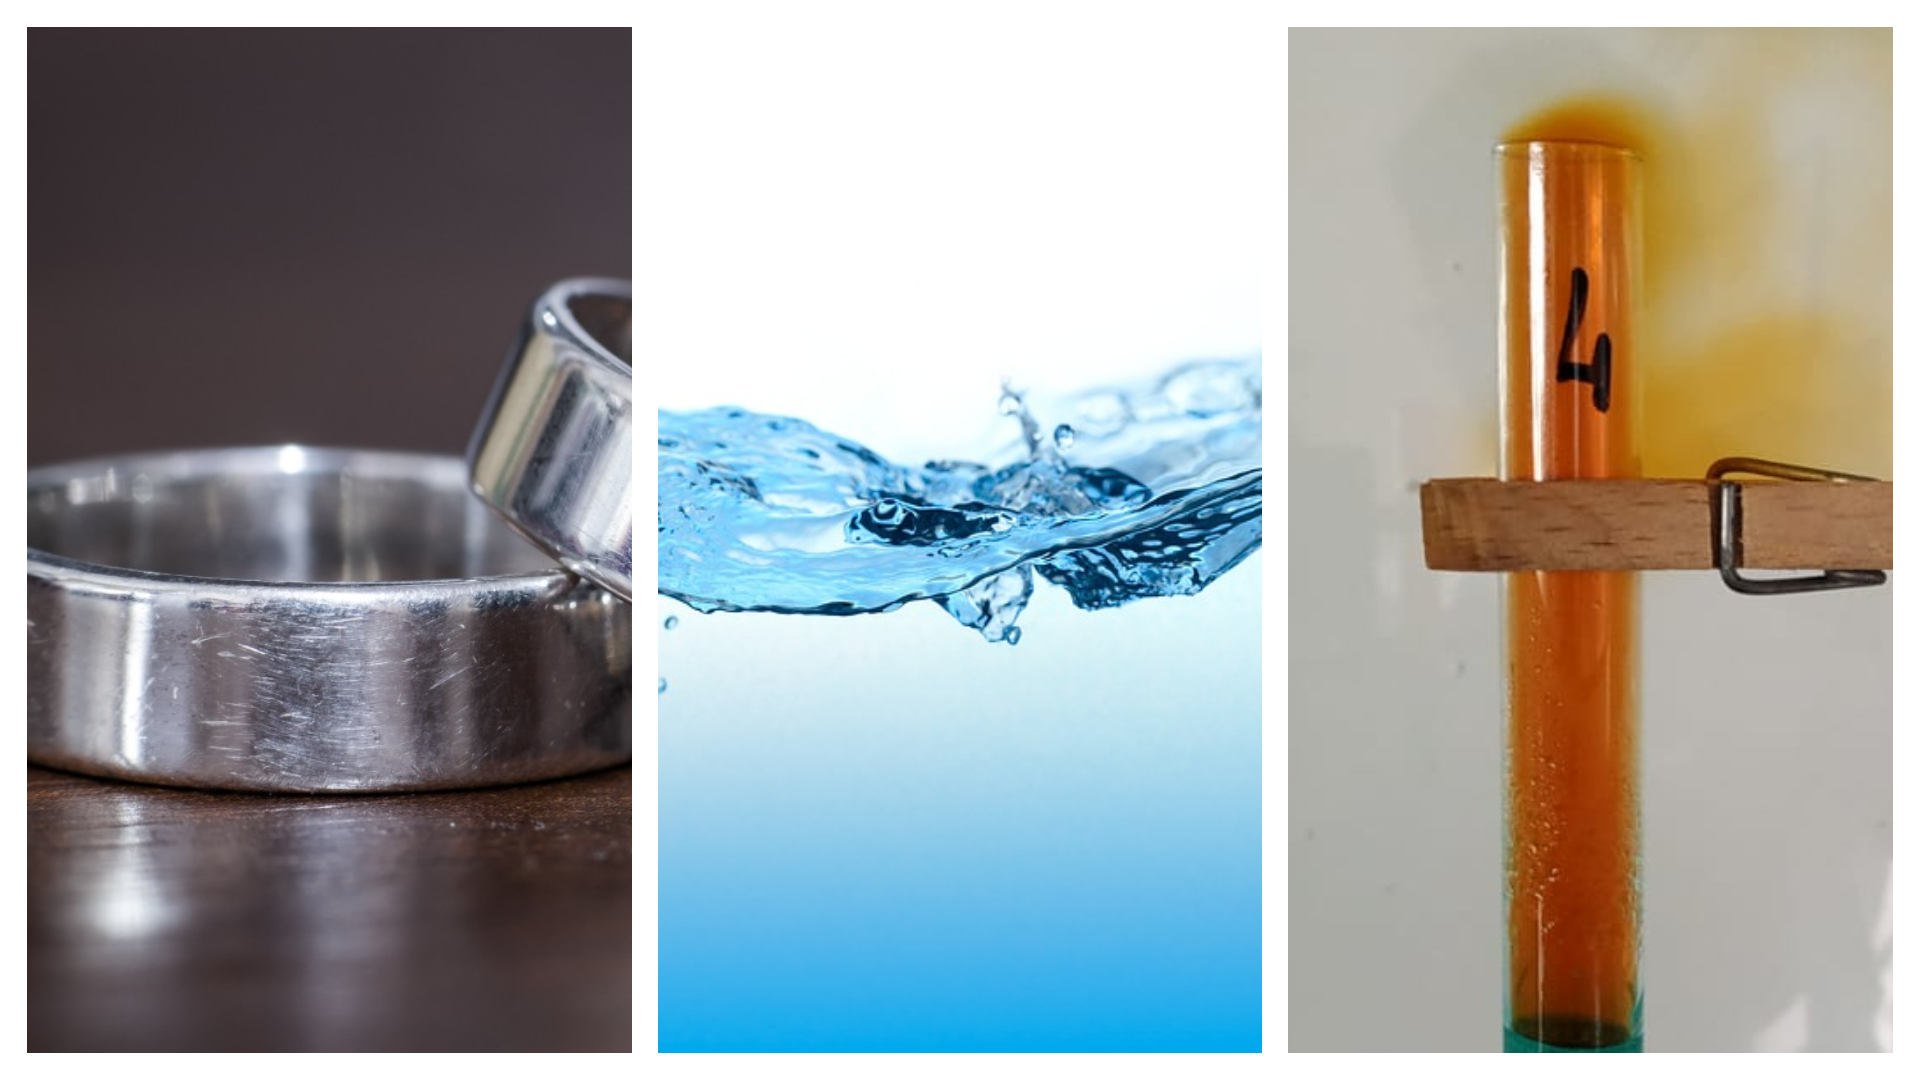 Imagen de un anillo metálico, agua y un tubo de ensayo en donde se desprenden óxido de nitrógeno